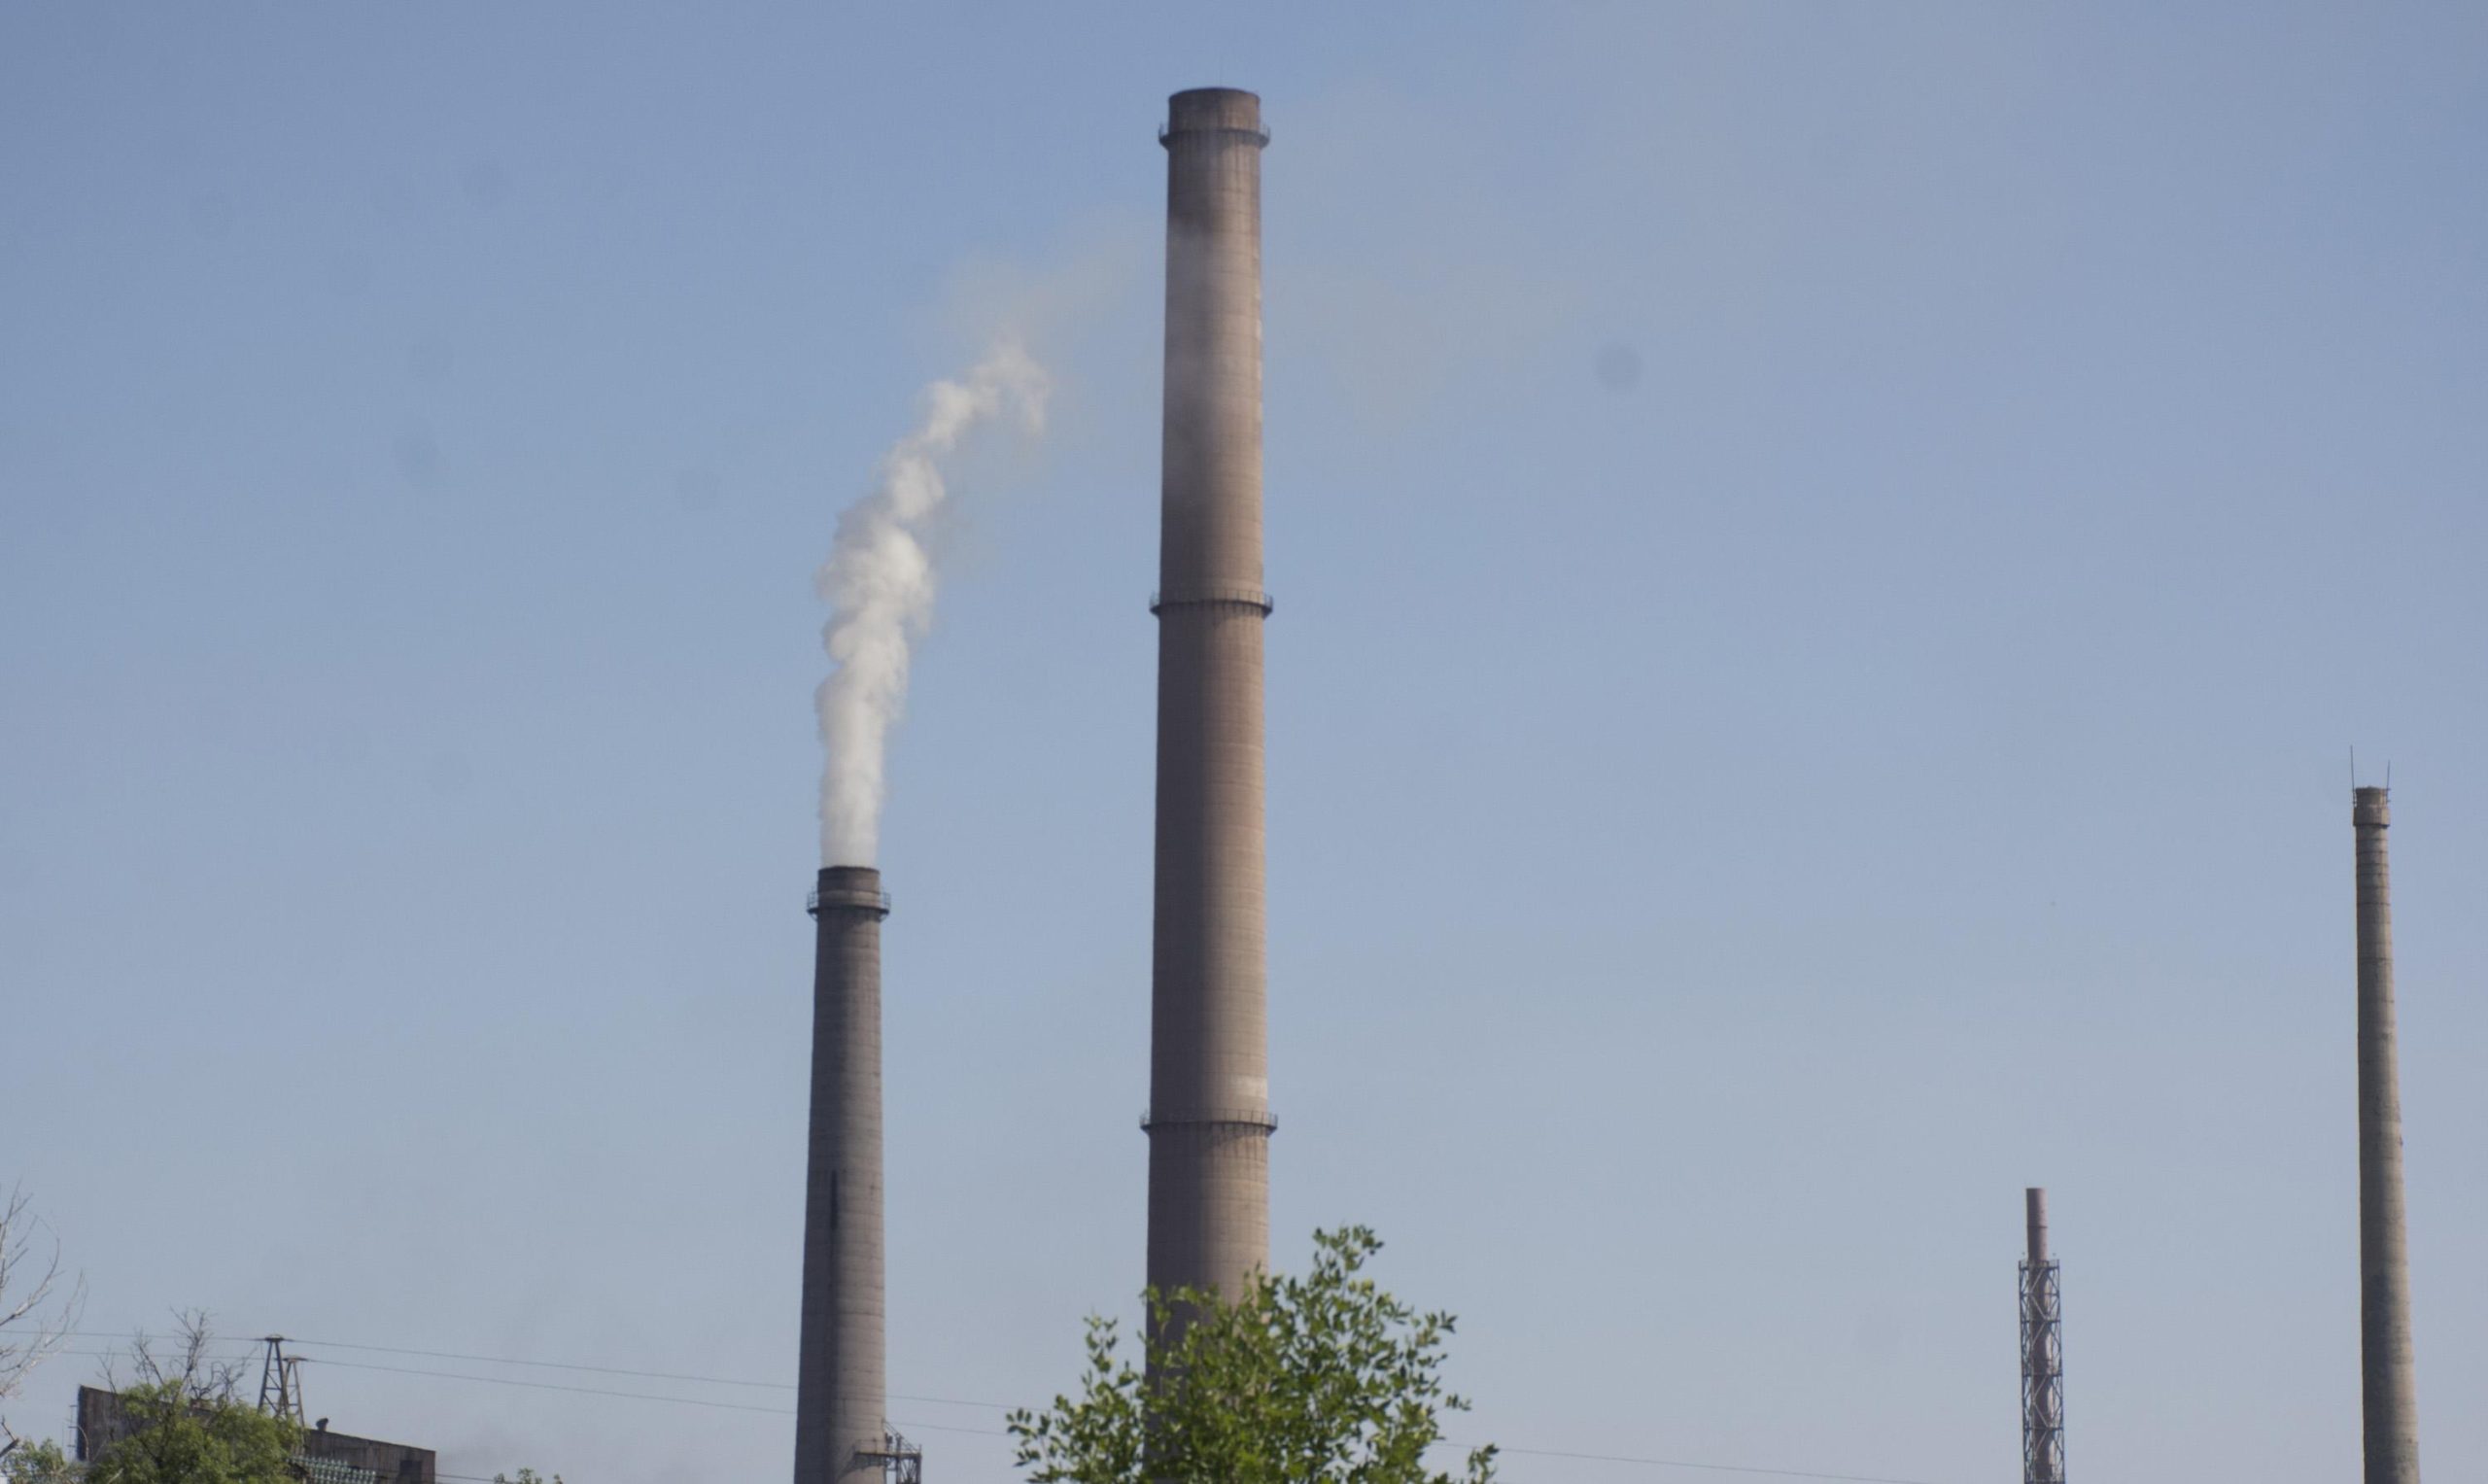 Спешни мерки за намаляване на замърсяването на въздуха в енергийния